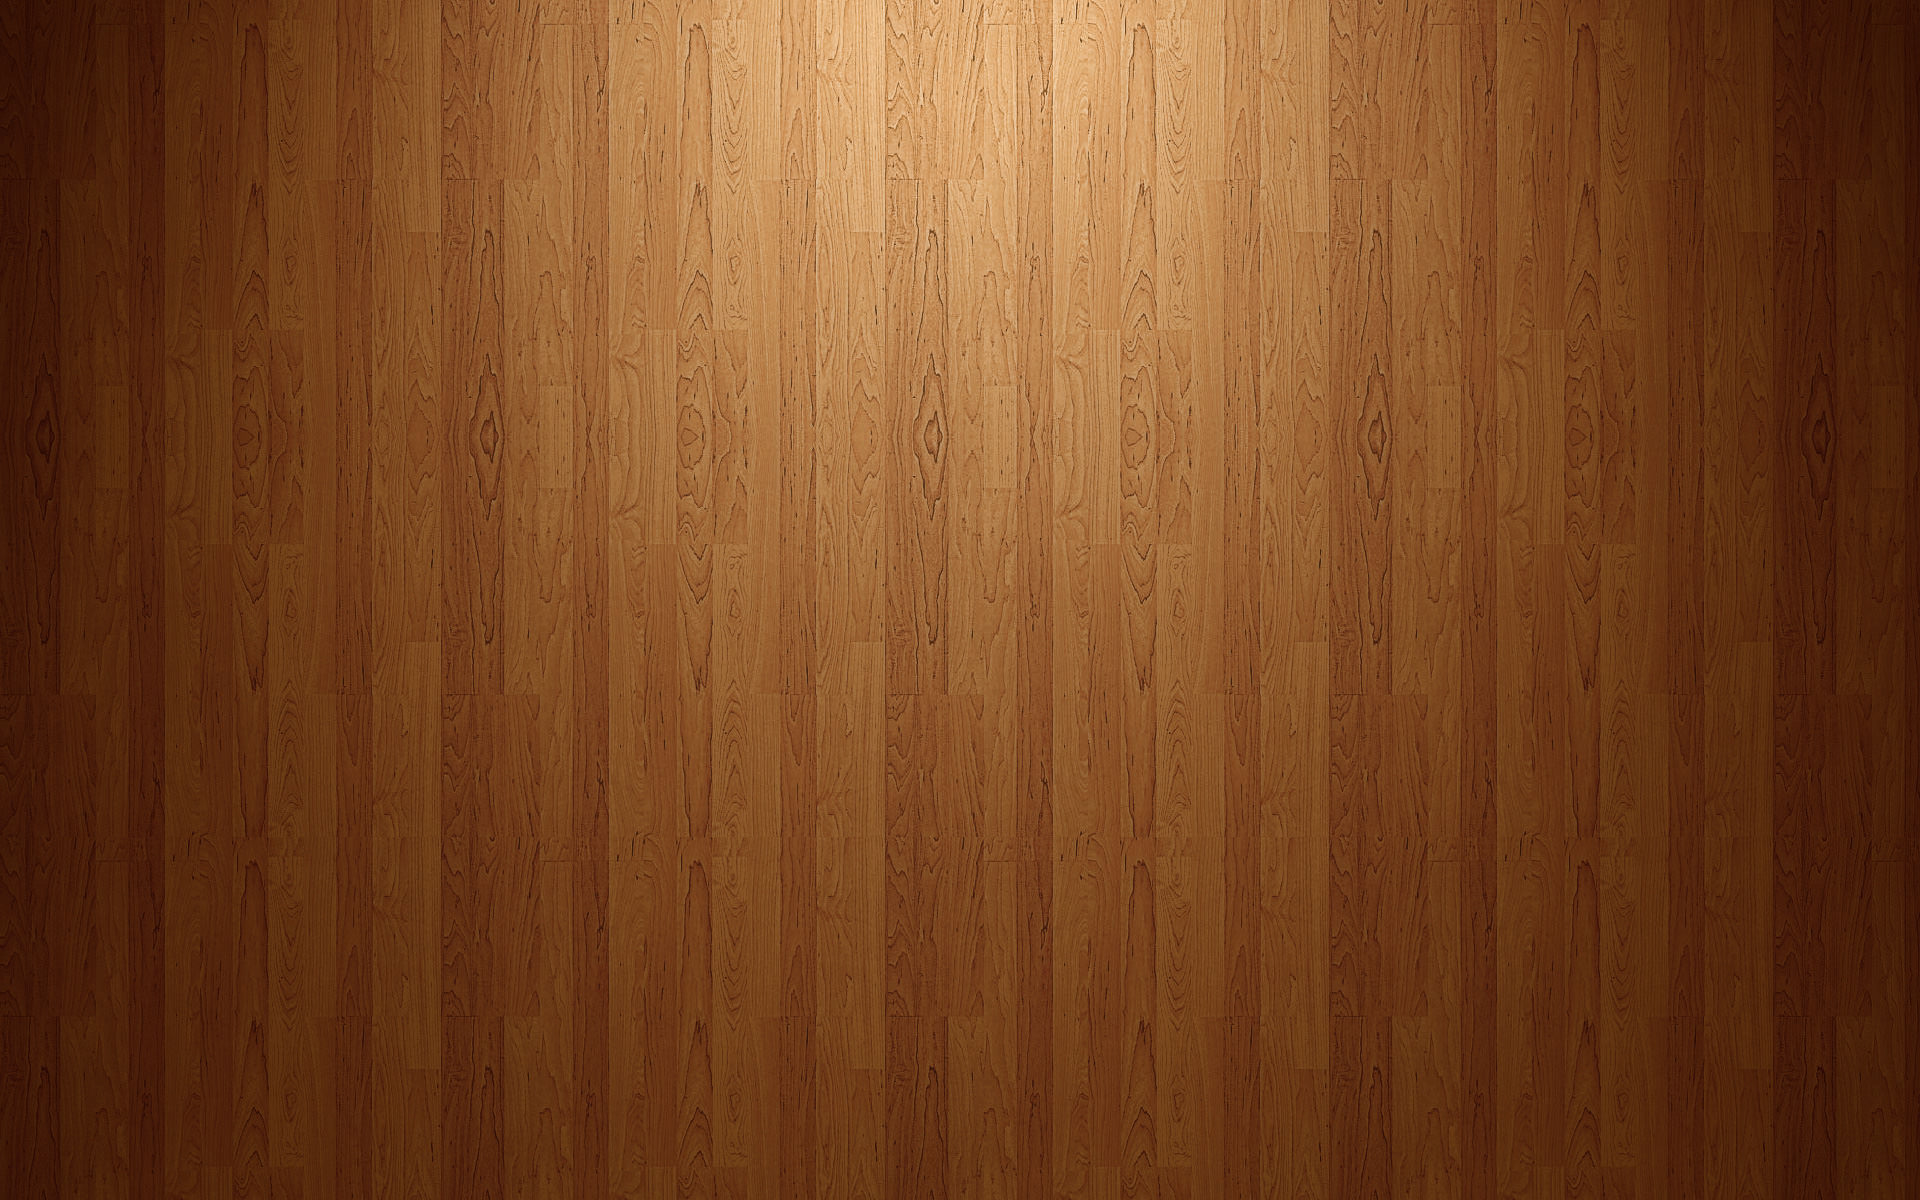 HD Wood Grain Floor Wallpaper.